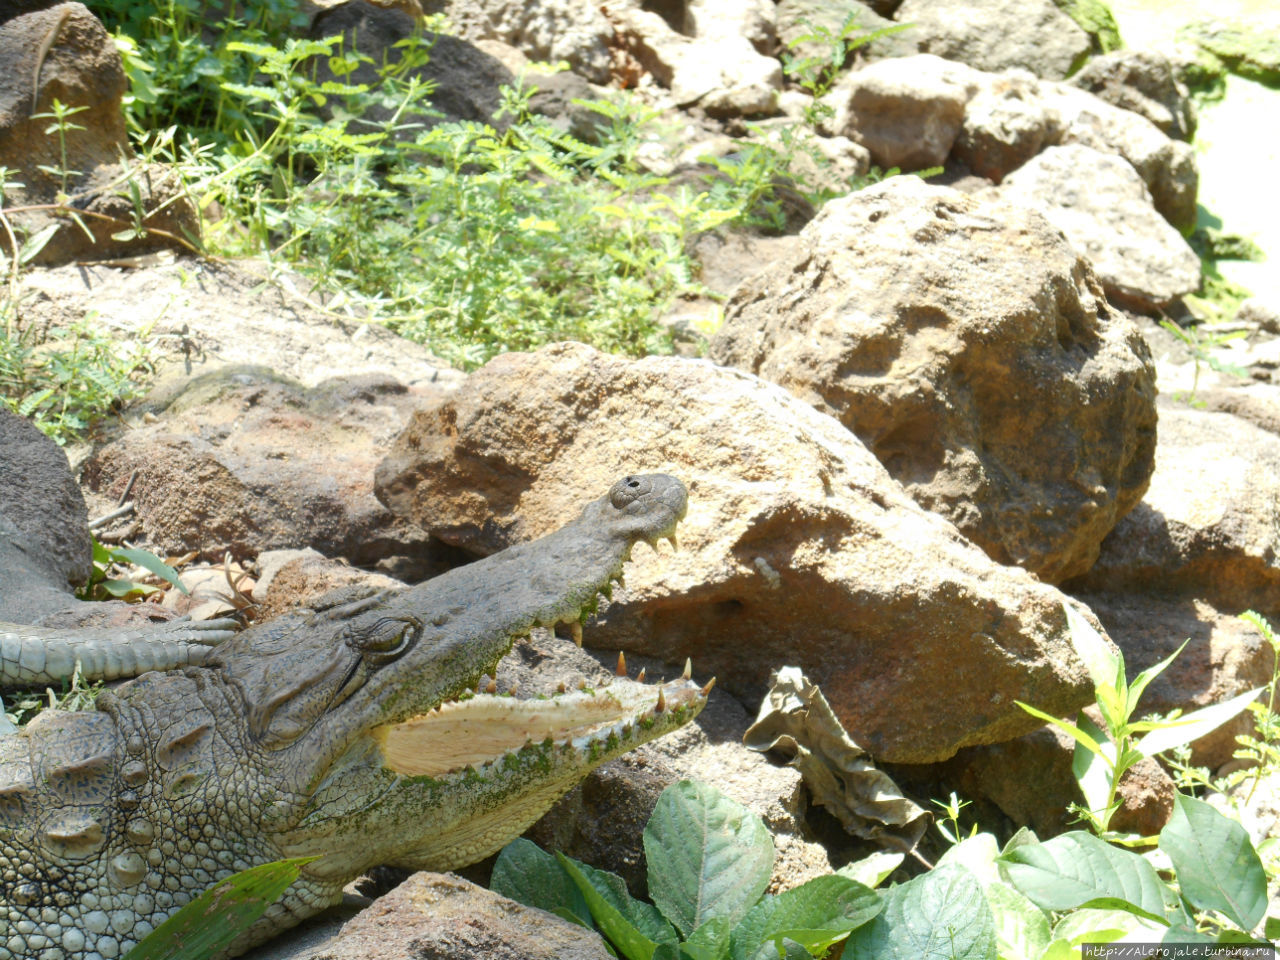 Экскурсии по стране. Ферма крокодилов Катчикалли